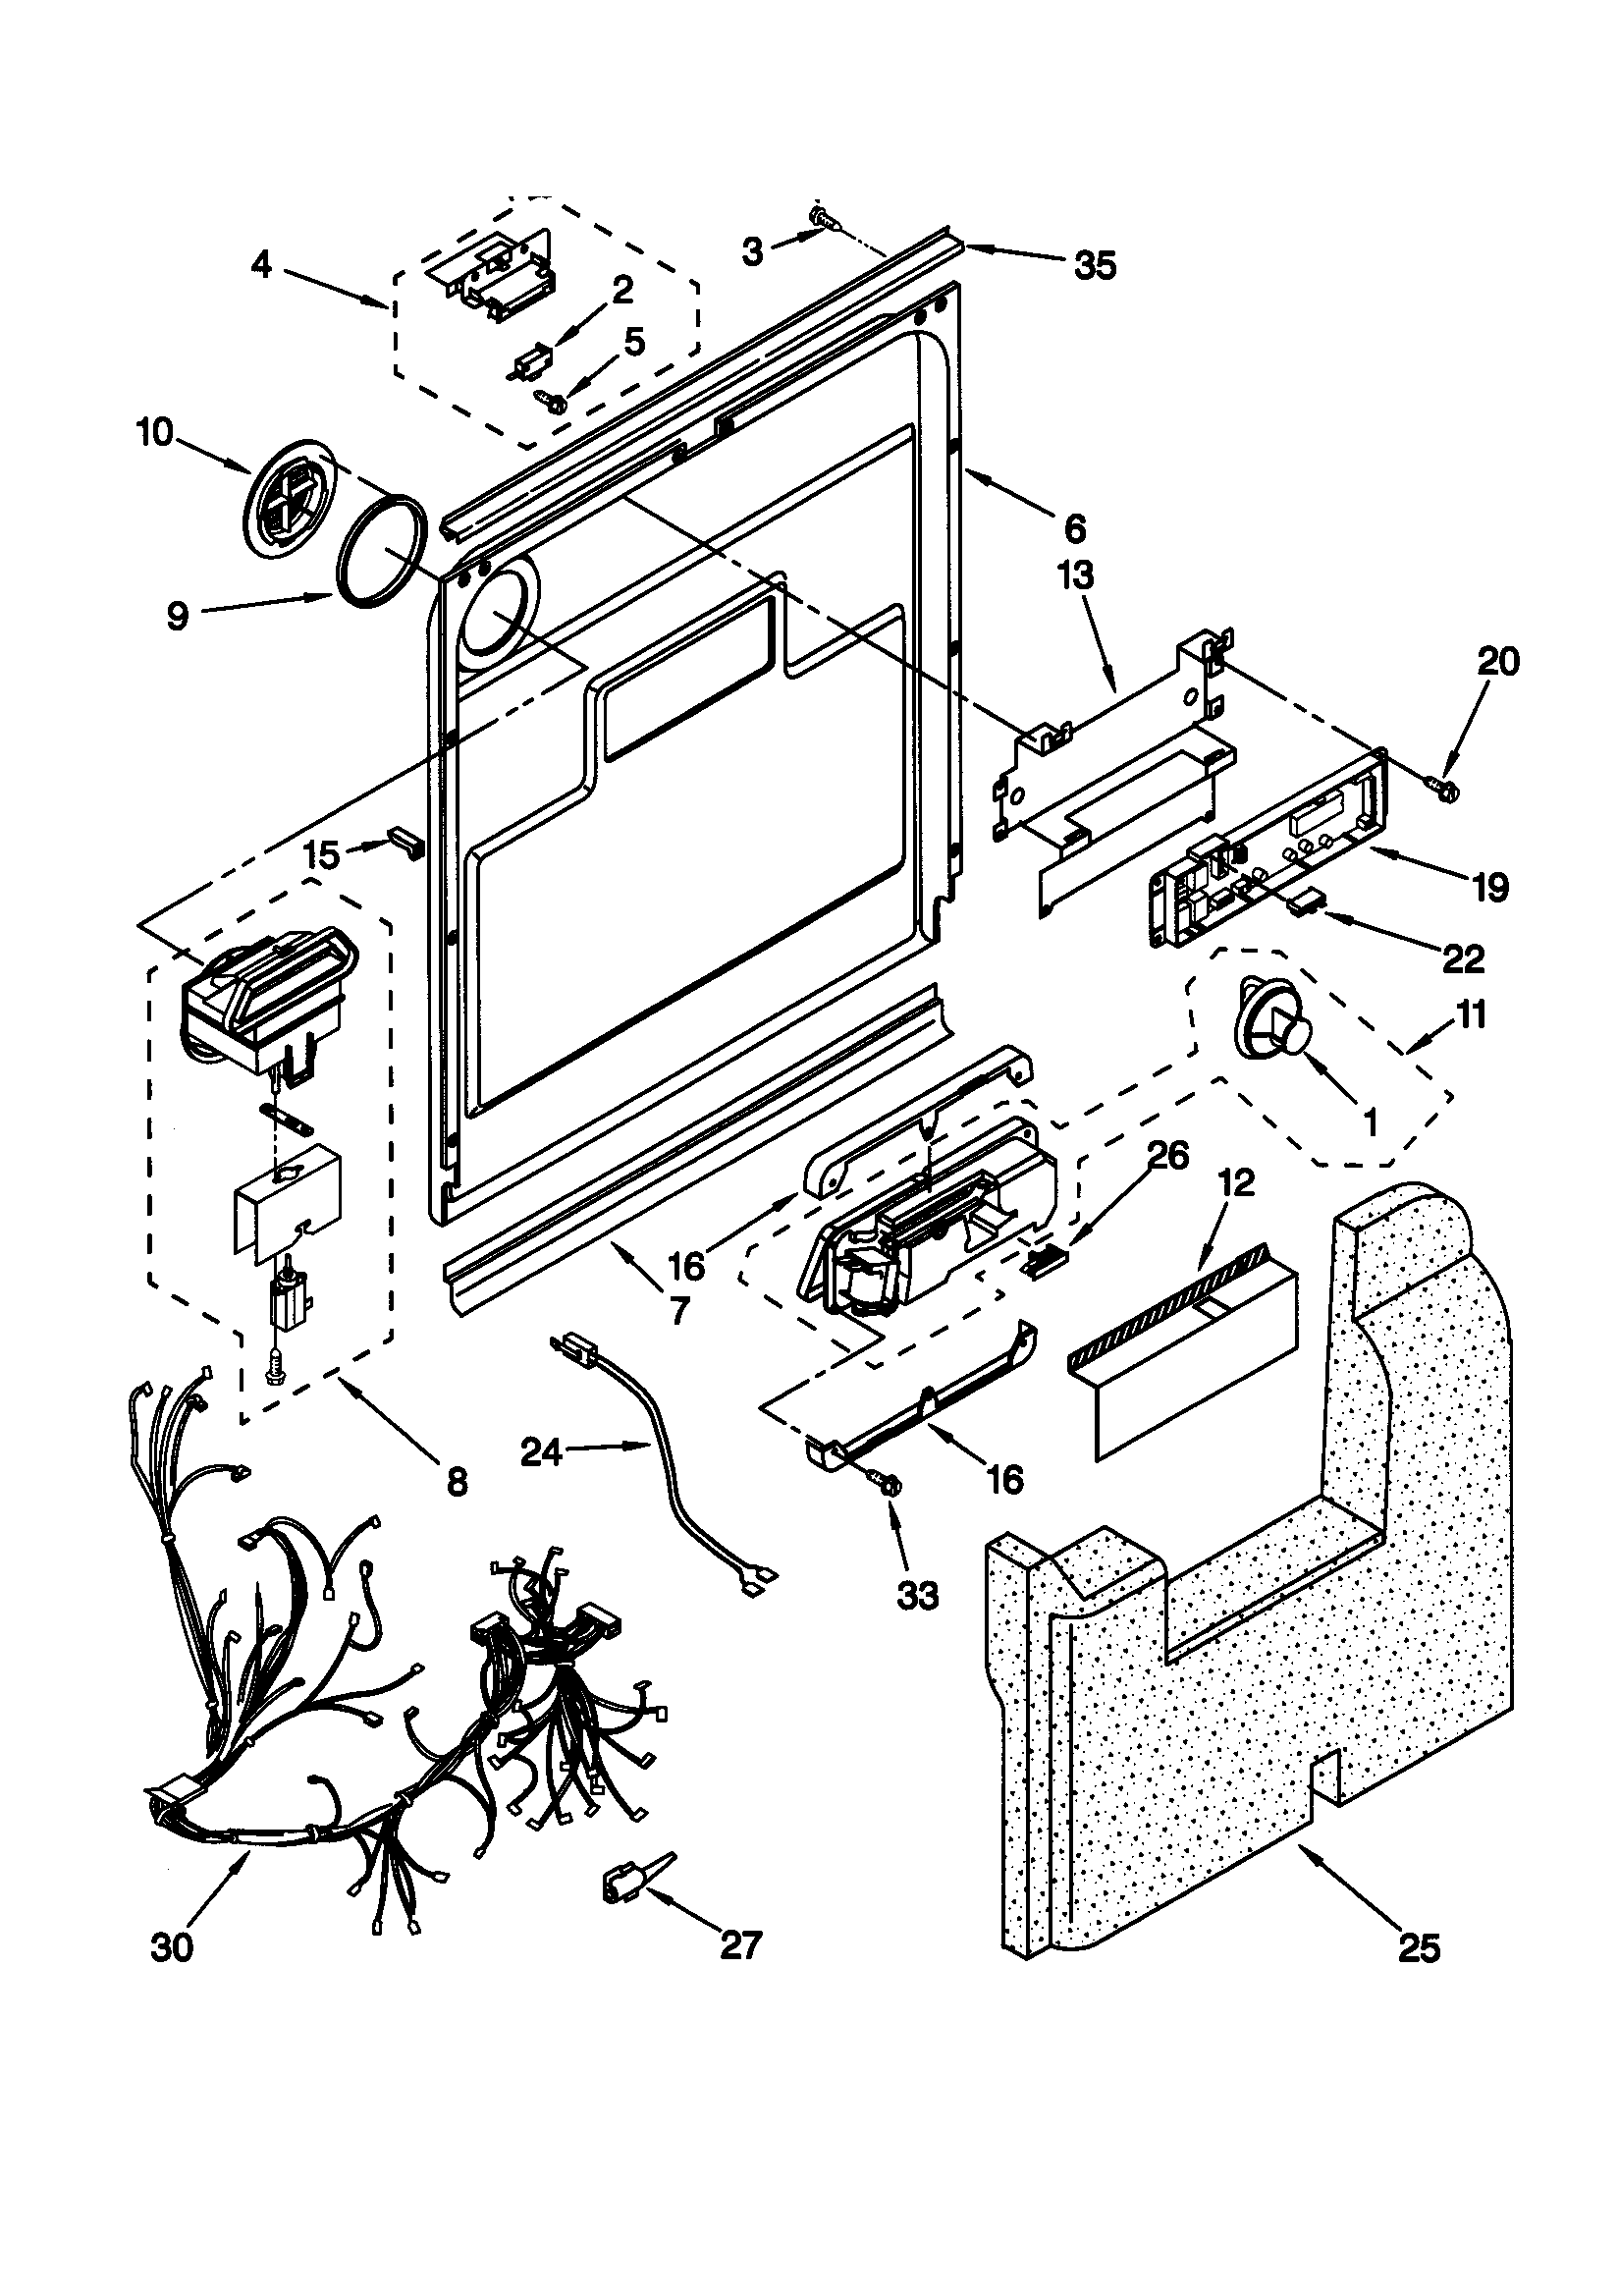 Dishwasher Drawing at GetDrawings.com | Free for personal ... ge nautilus dishwasher wiring diagram 